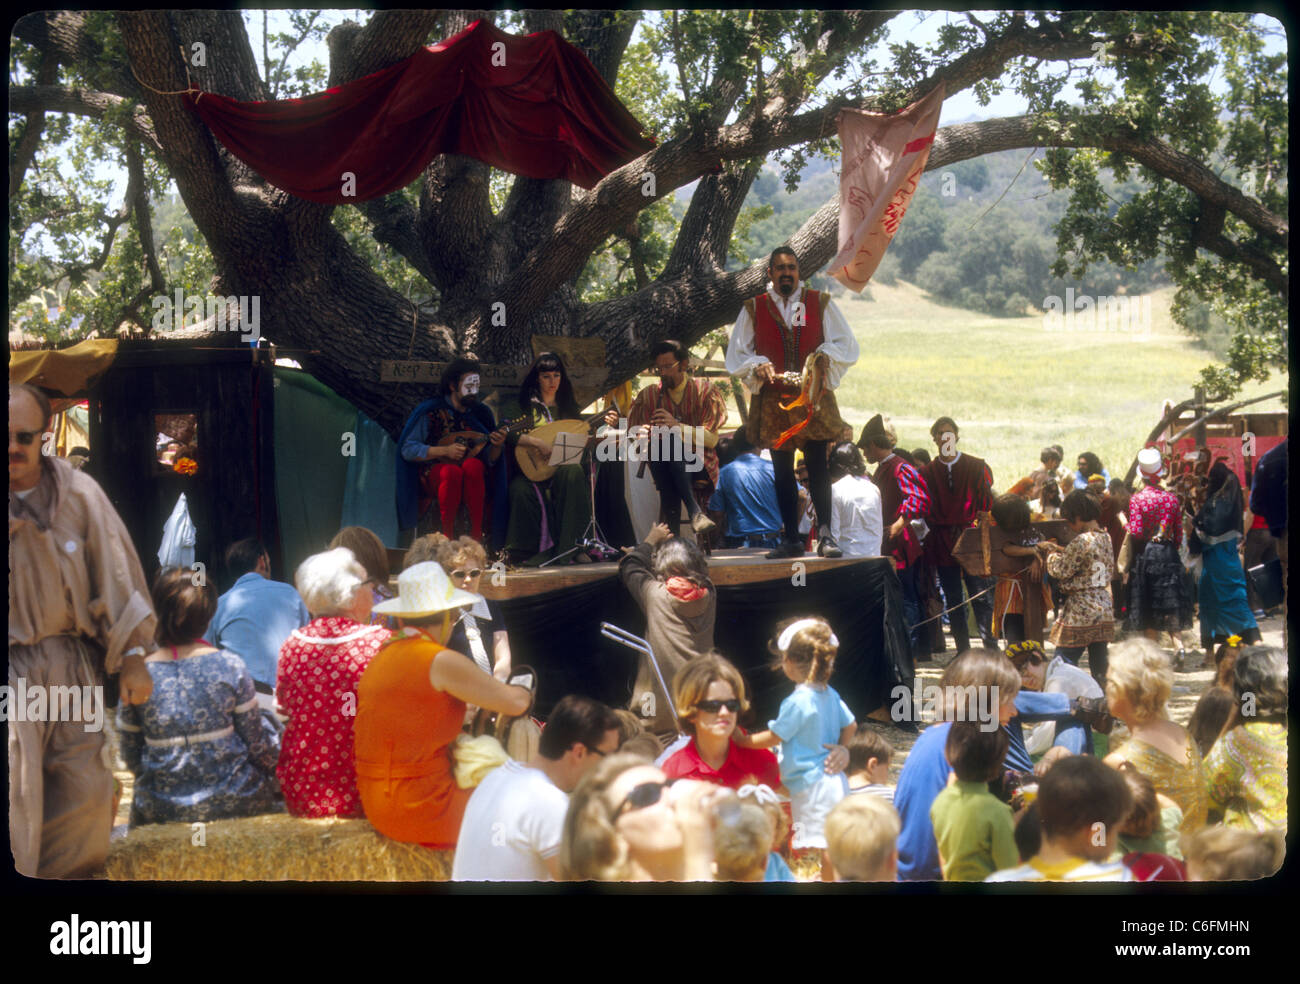 Bühne Künstler Unterhaltung Renaissance Vergnügen Faire Southern California Hippies der 1970er Jahre Stockfoto